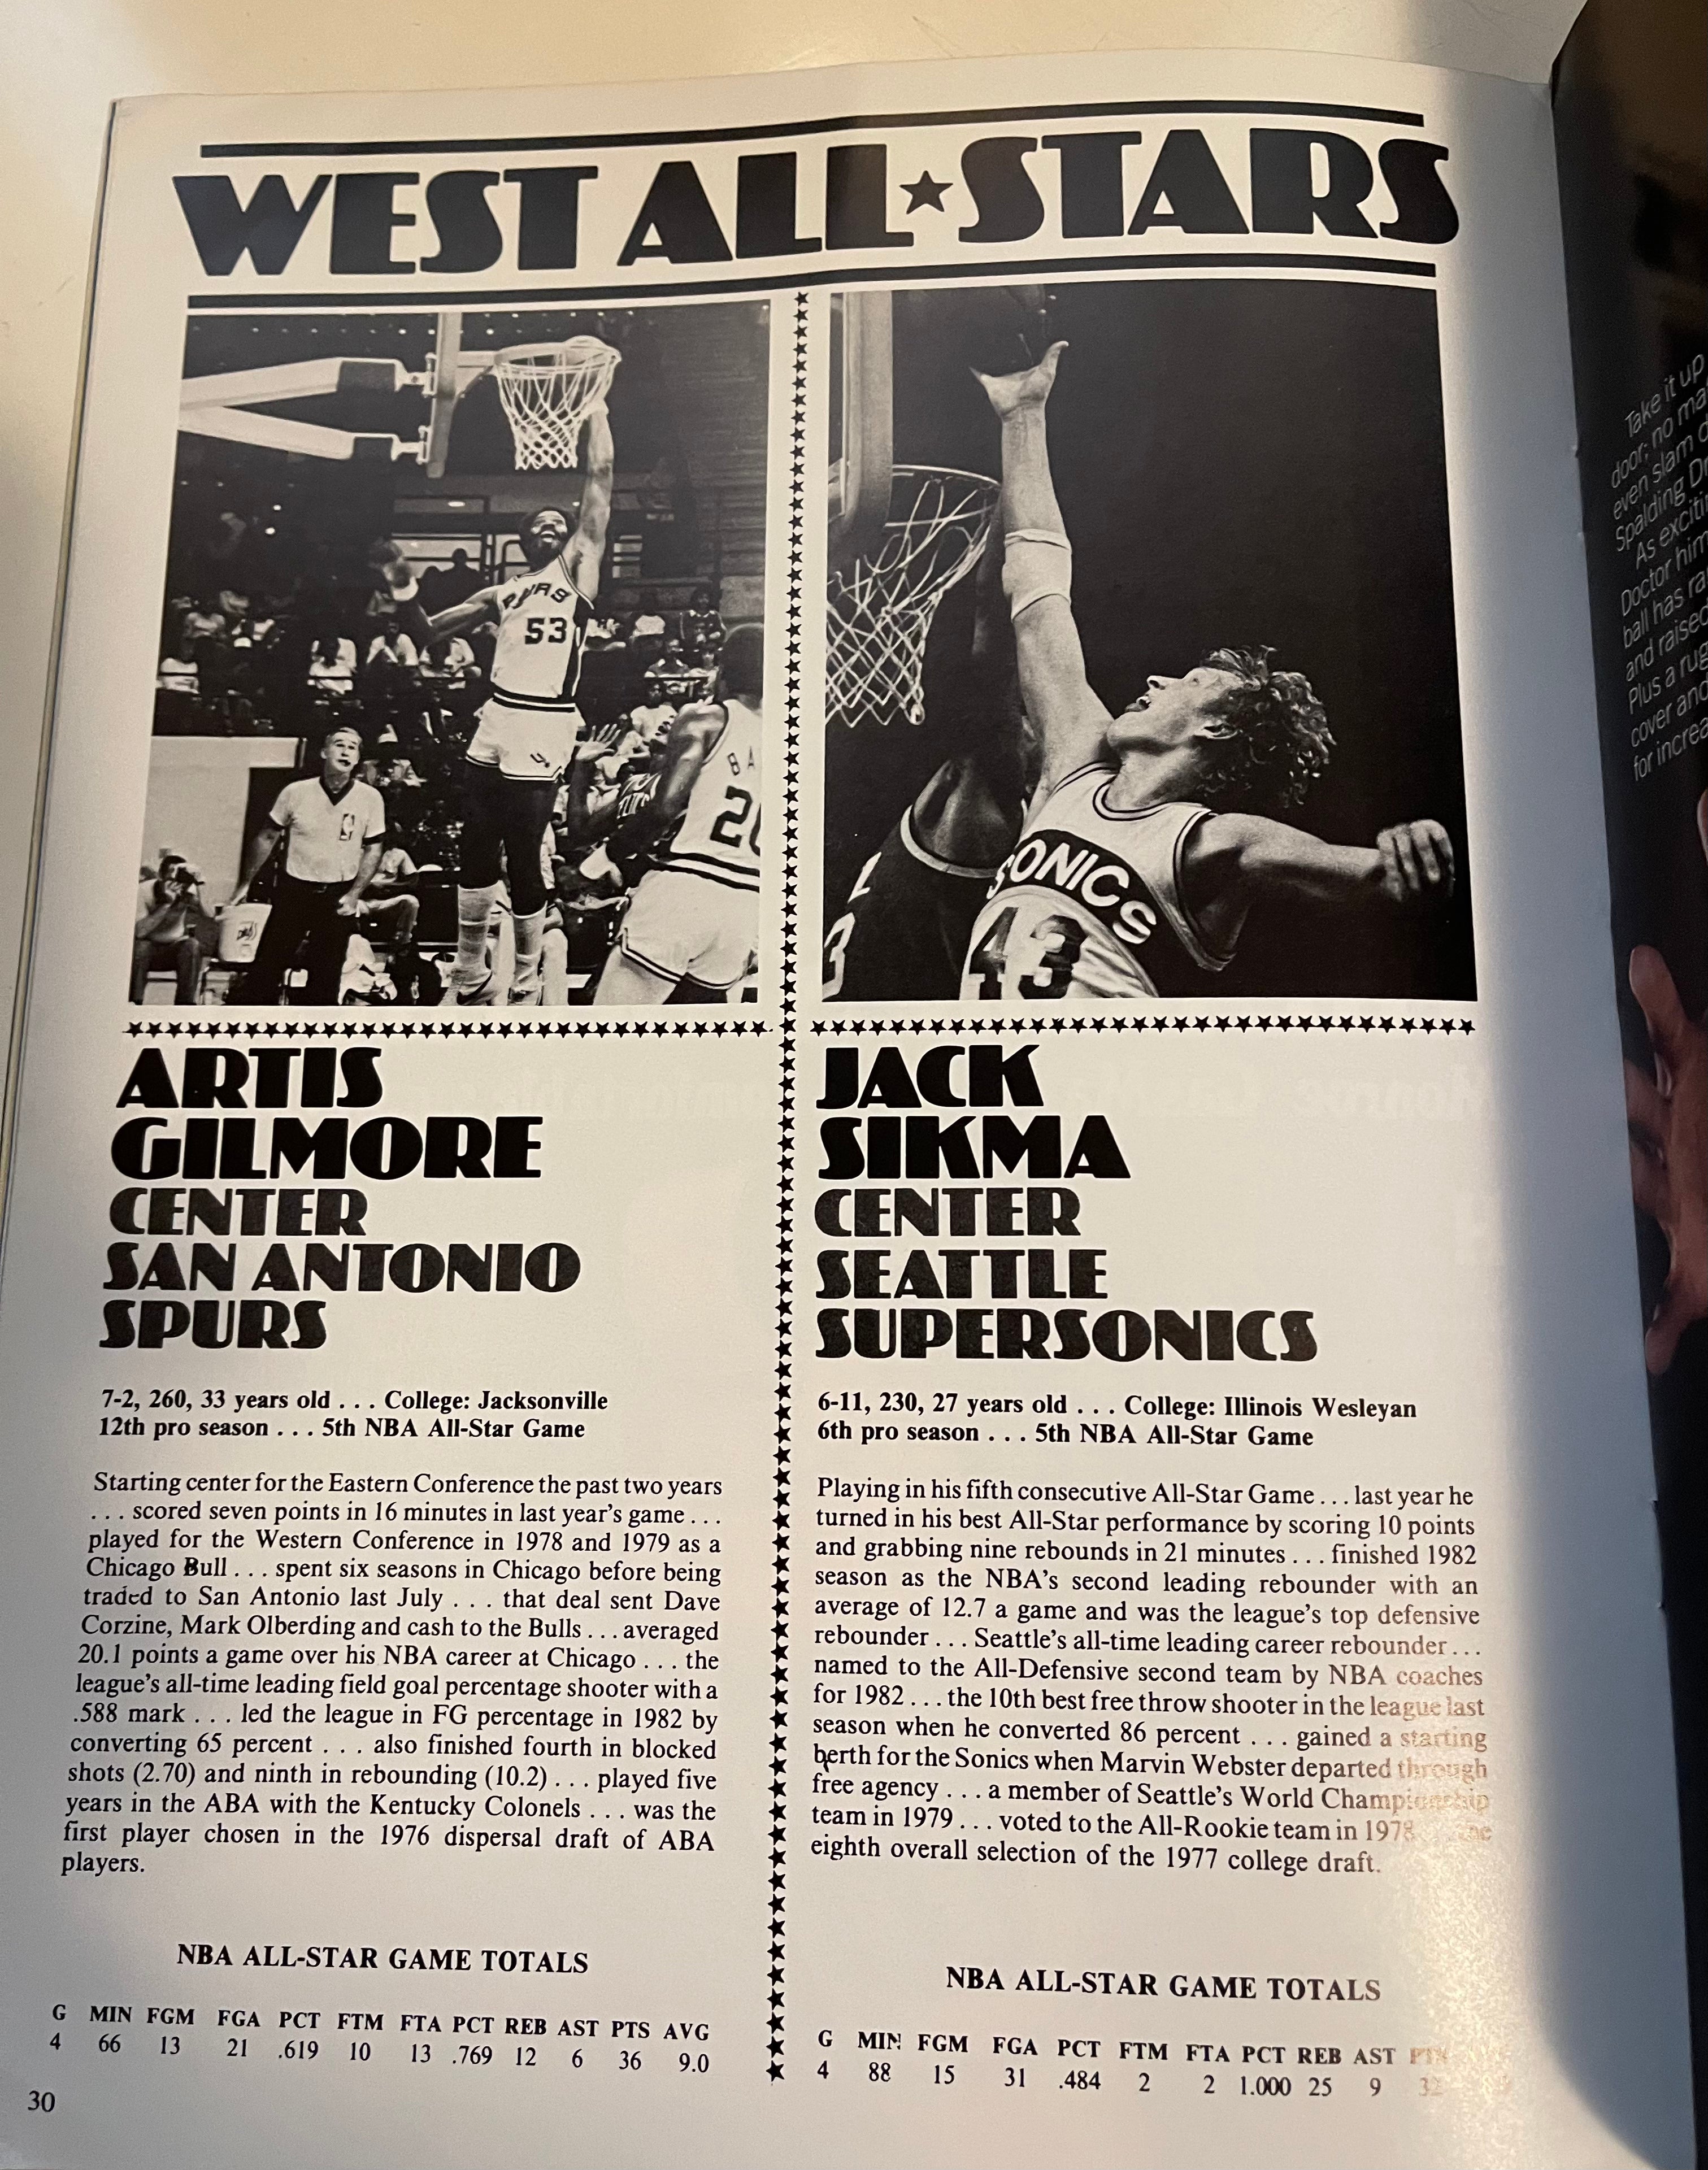 1983 NBA All Star game basketball program